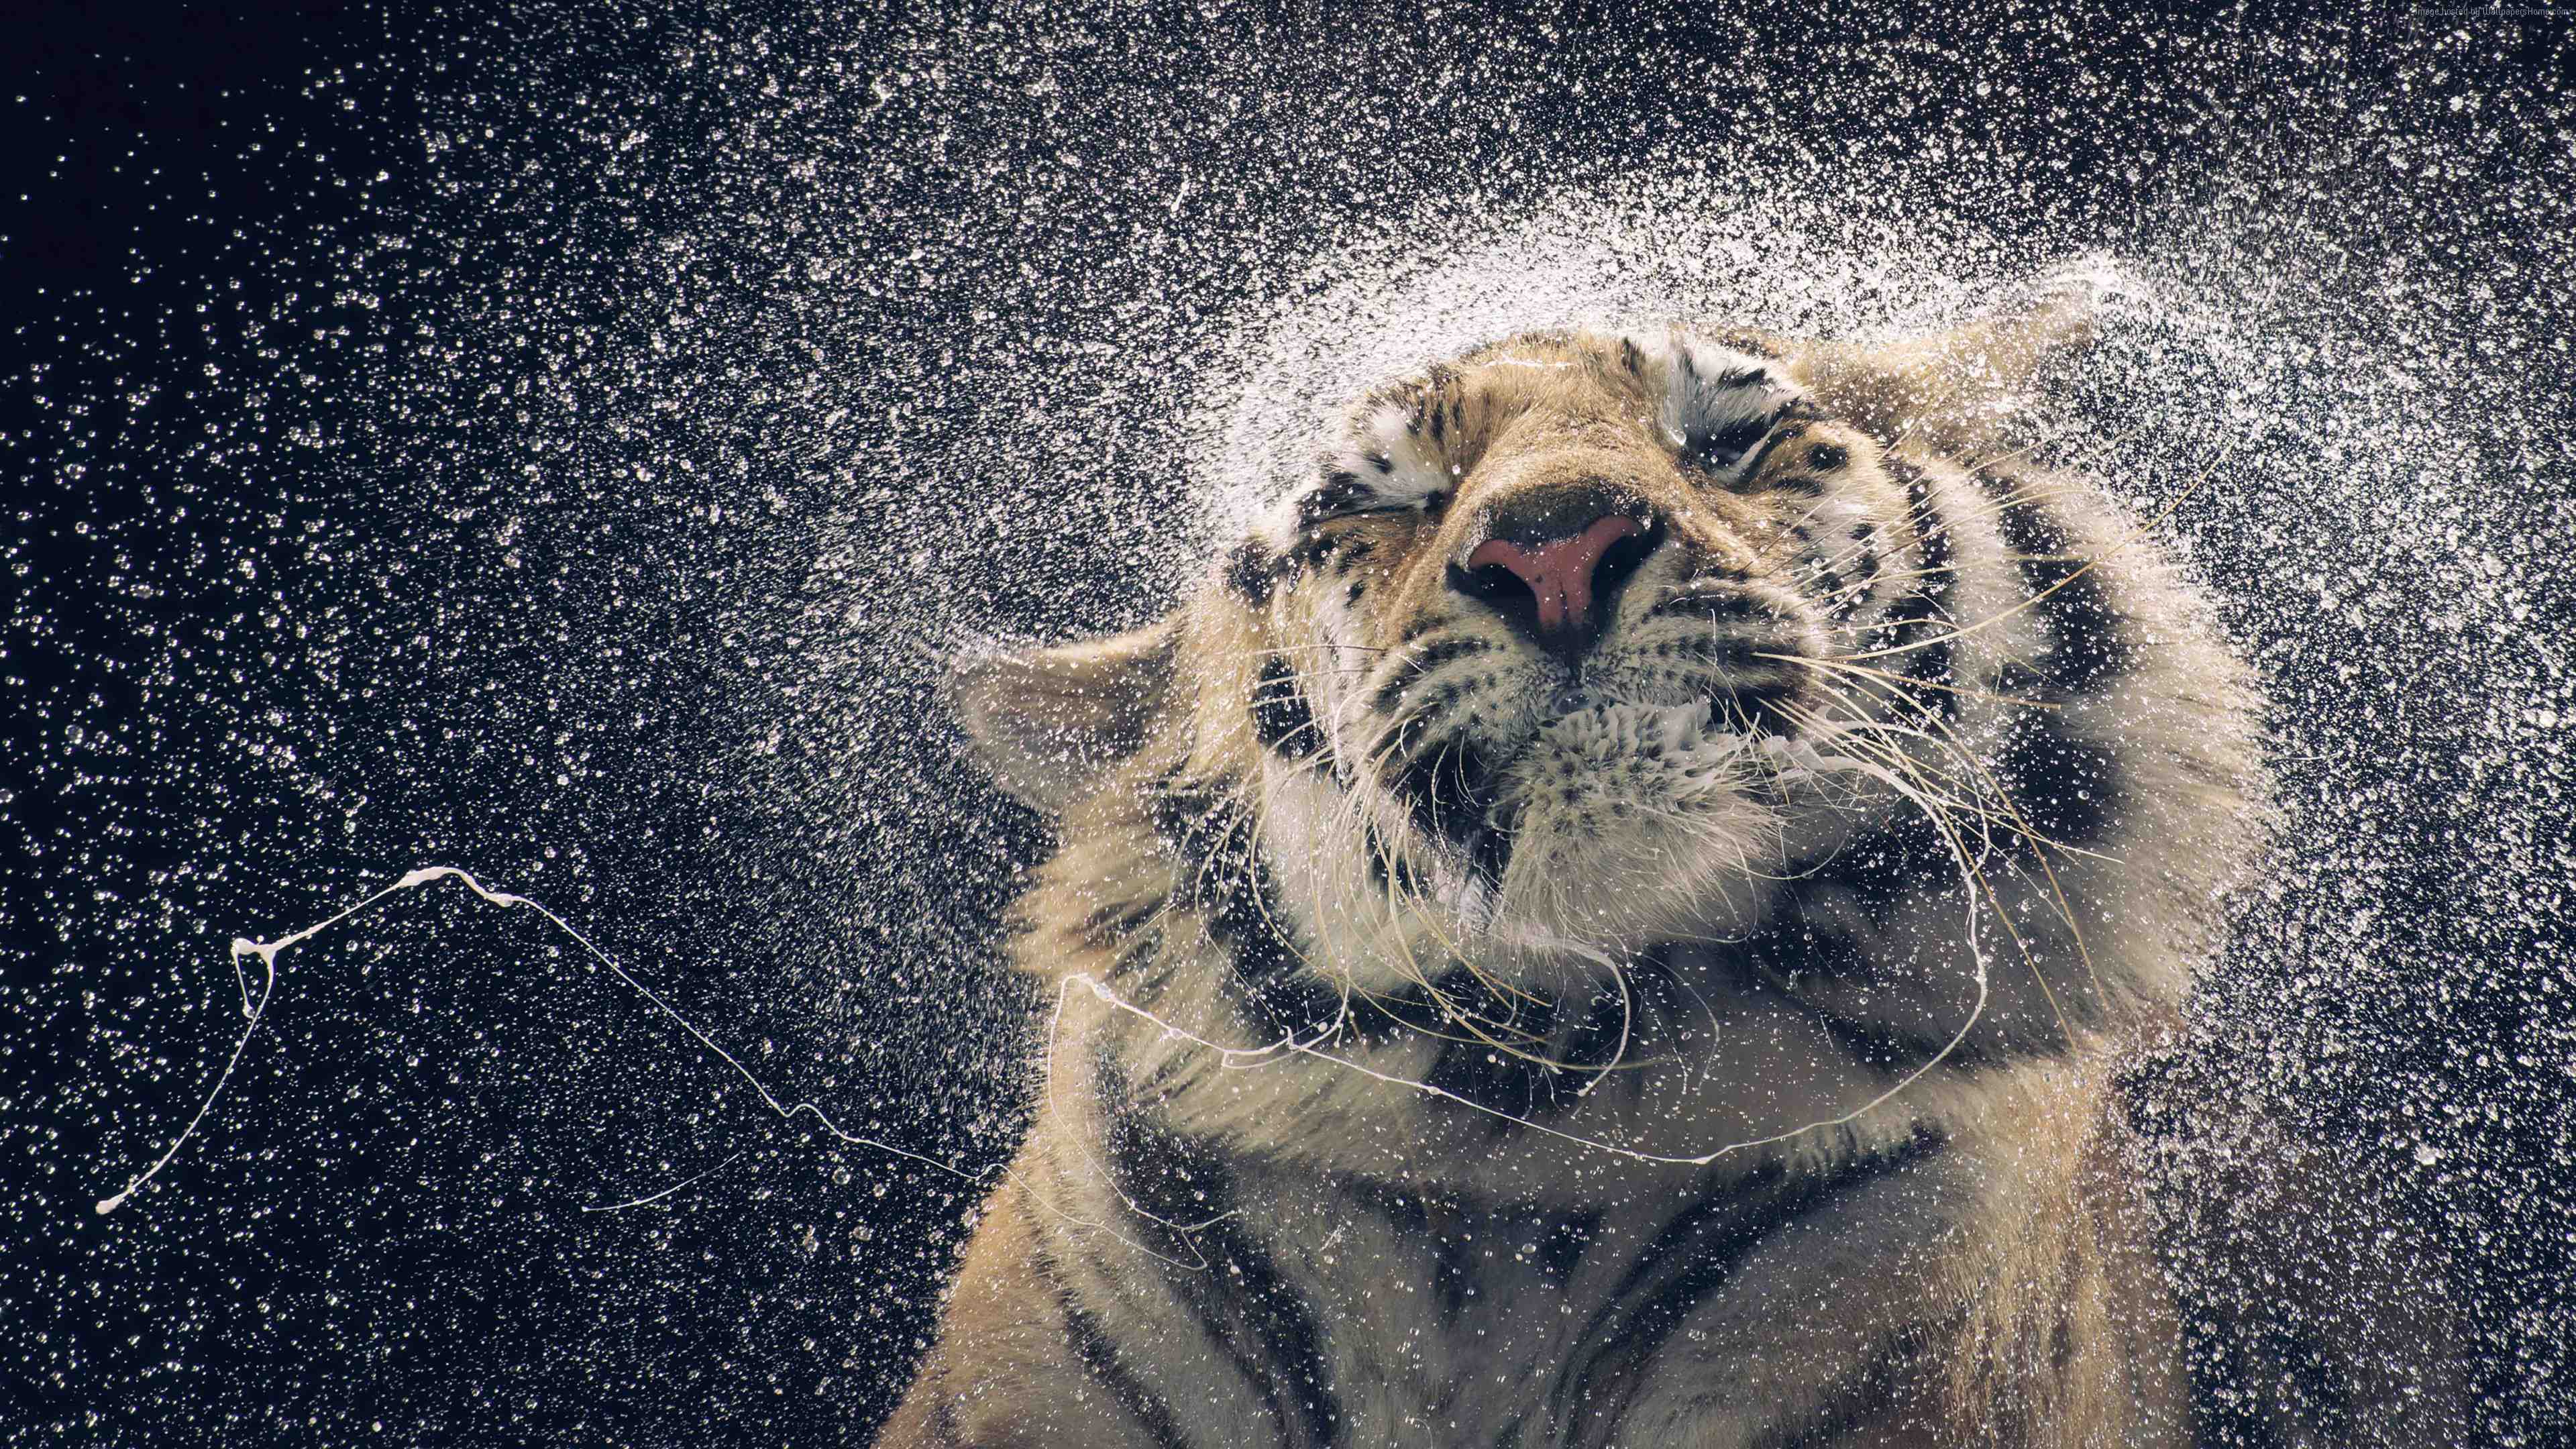 Hình nền Tiger 4K sẽ khiến bạn bị cám dỗ với vẻ đẹp hoang dã và mạnh mẽ của loài hổ. Hãy cùng thưởng ngoạn con vật hung dữ này với hình ảnh siêu sắc nét của độ phân giải 4K.